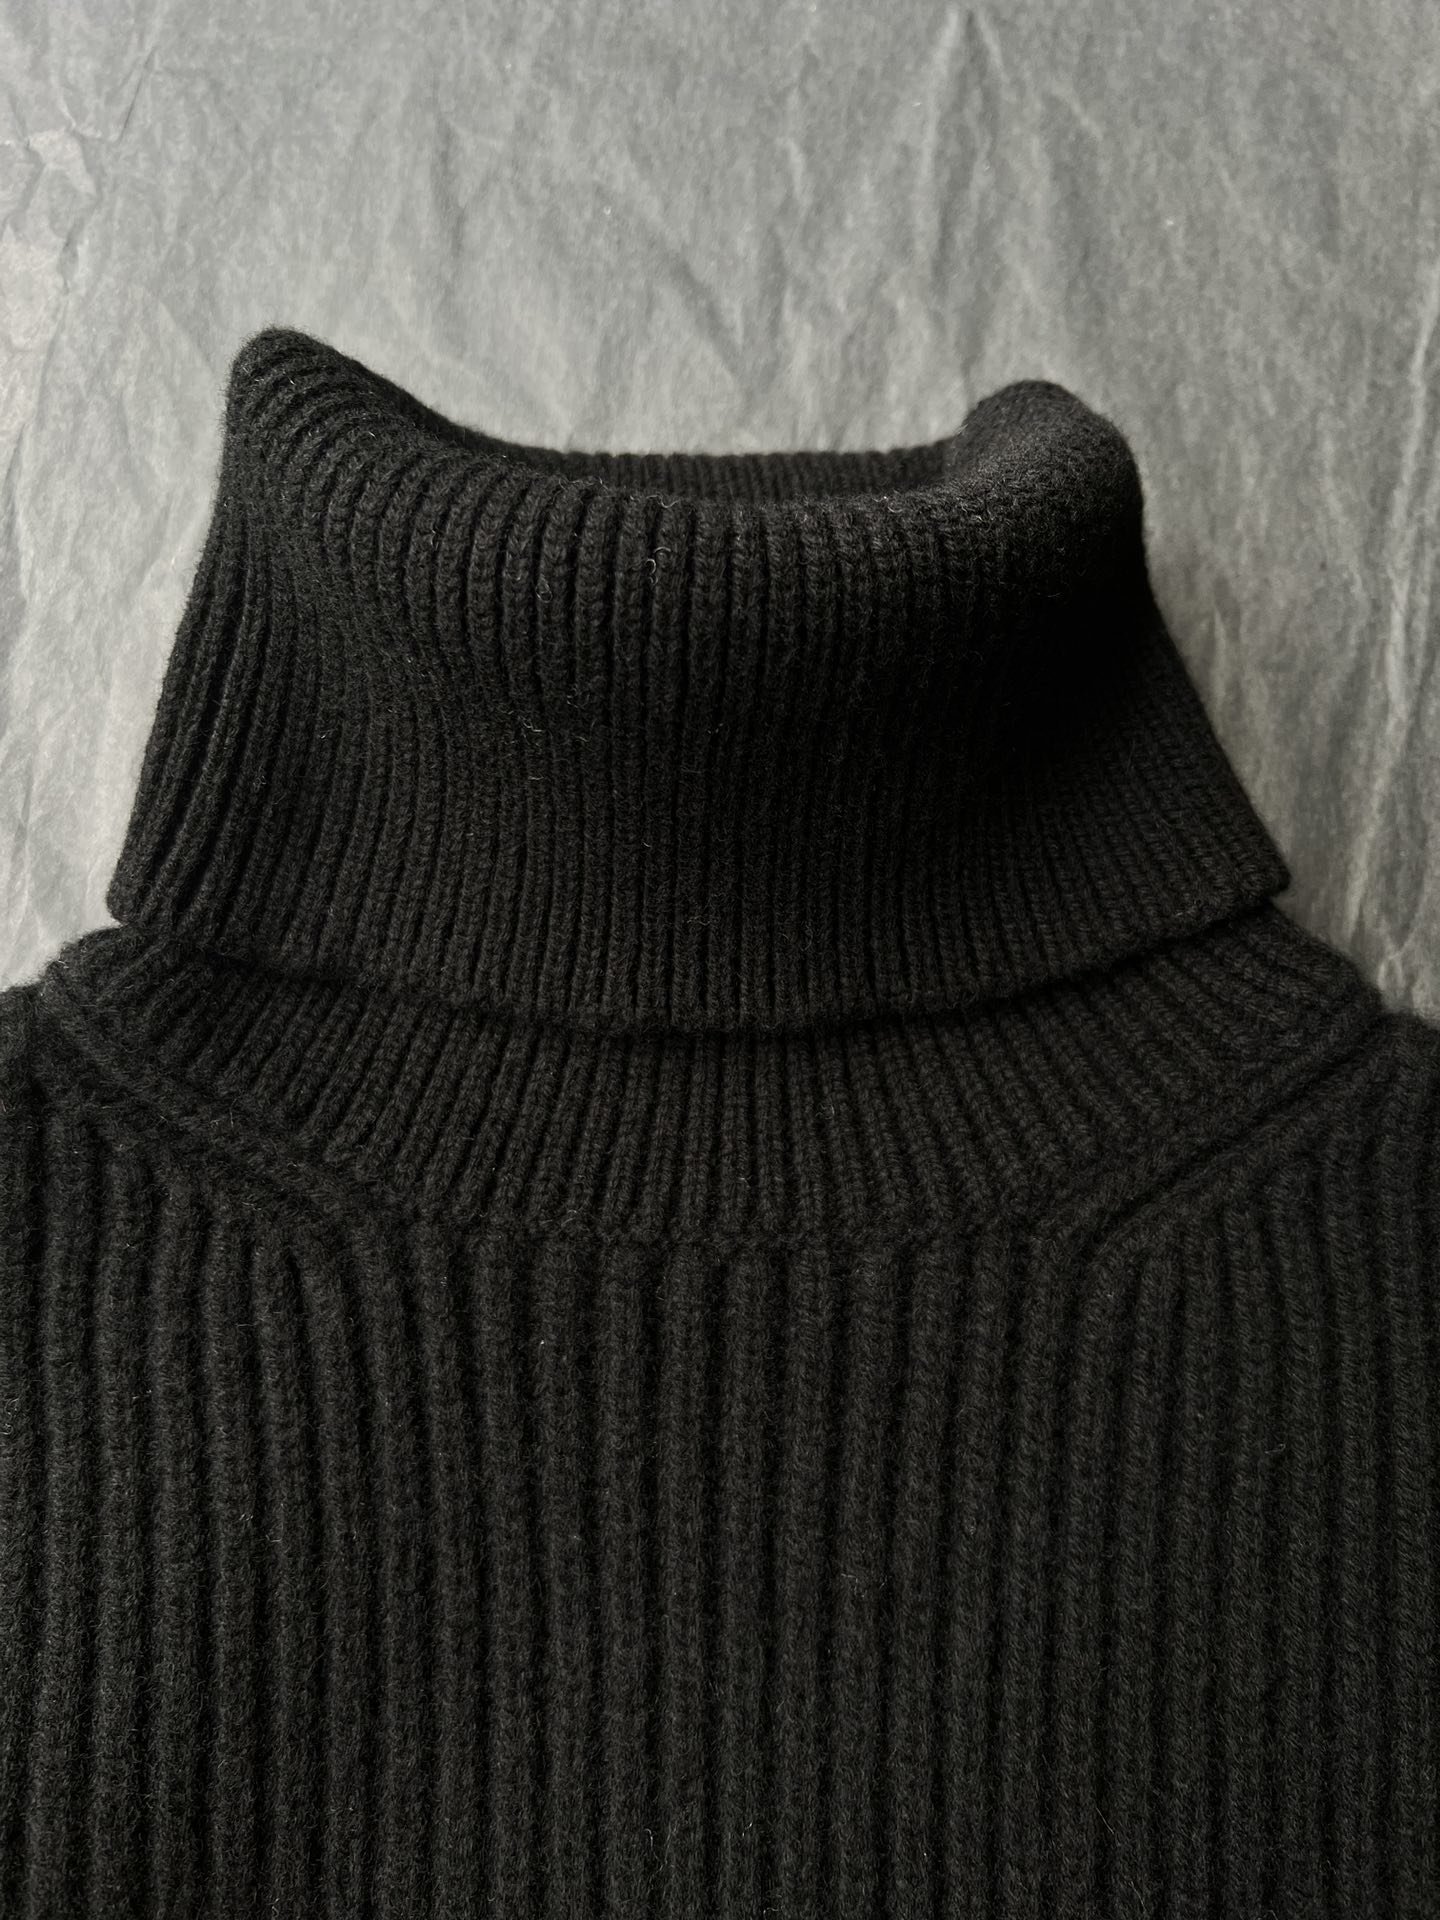 23秋冬新款️全羊毛高领毛衣！黑白两个颜色！这款毛衣很有重量！毛衣的纱线品质也在用的最好的全羊毛！高领保